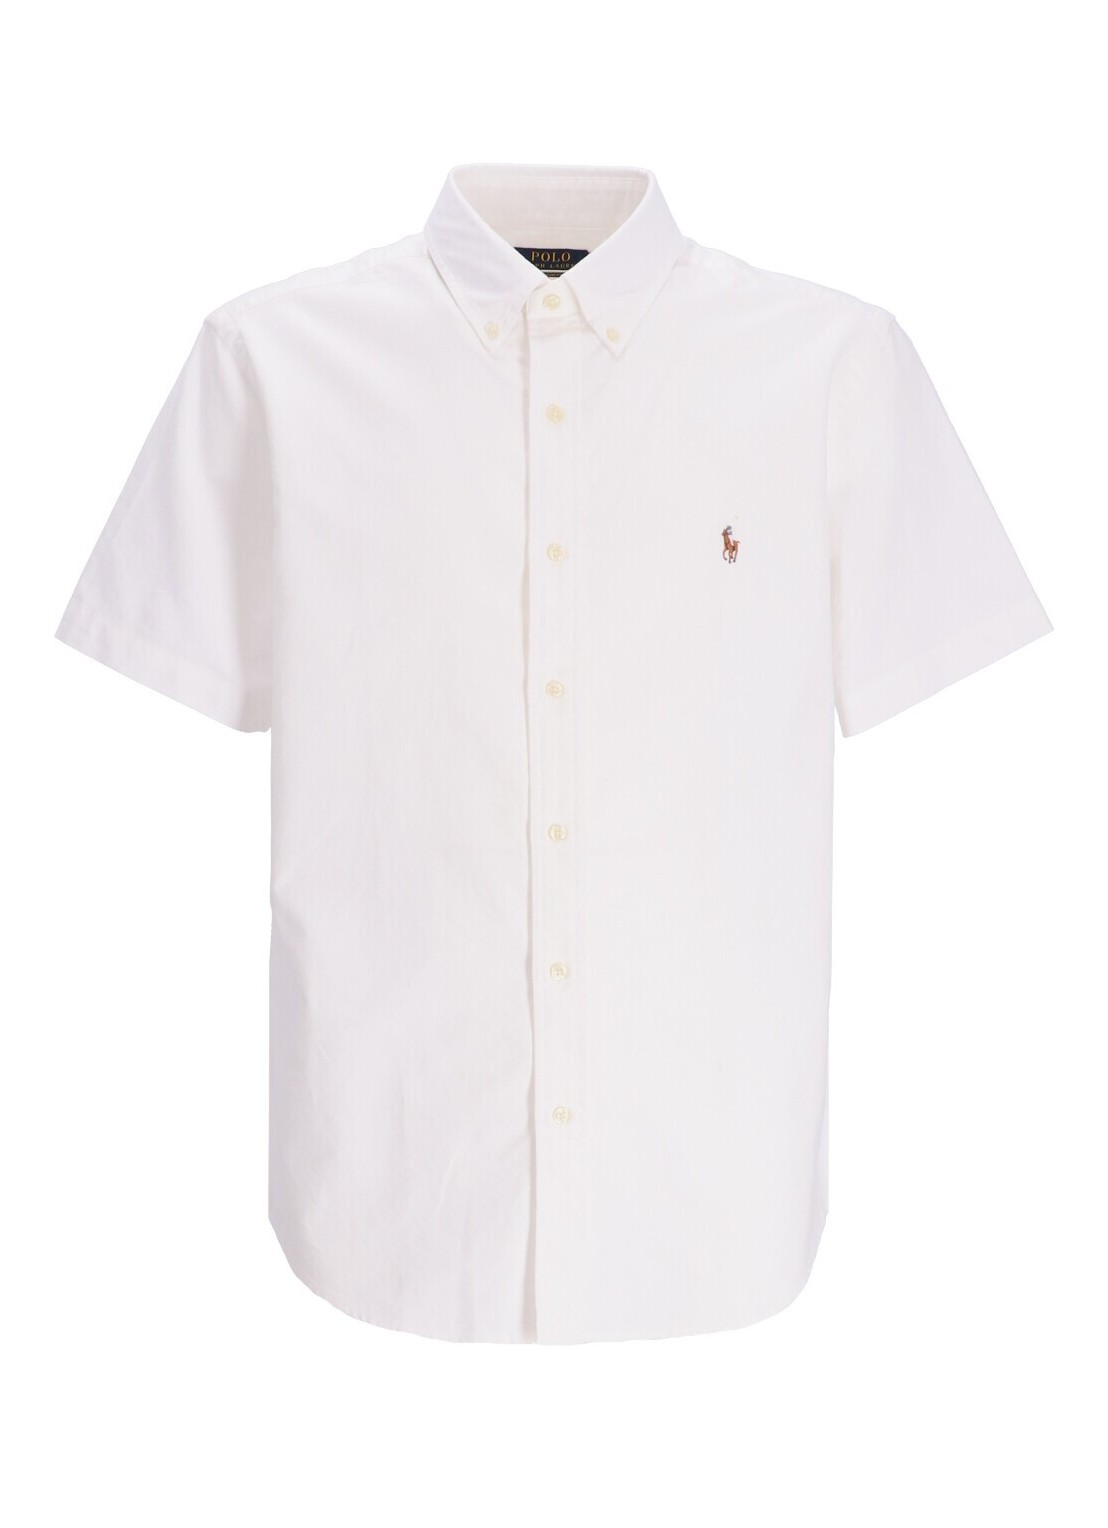 Camiseria polo ralph lauren shirt man cubdppcsss-short sleeve-sport 710850782002 white talla XL
 